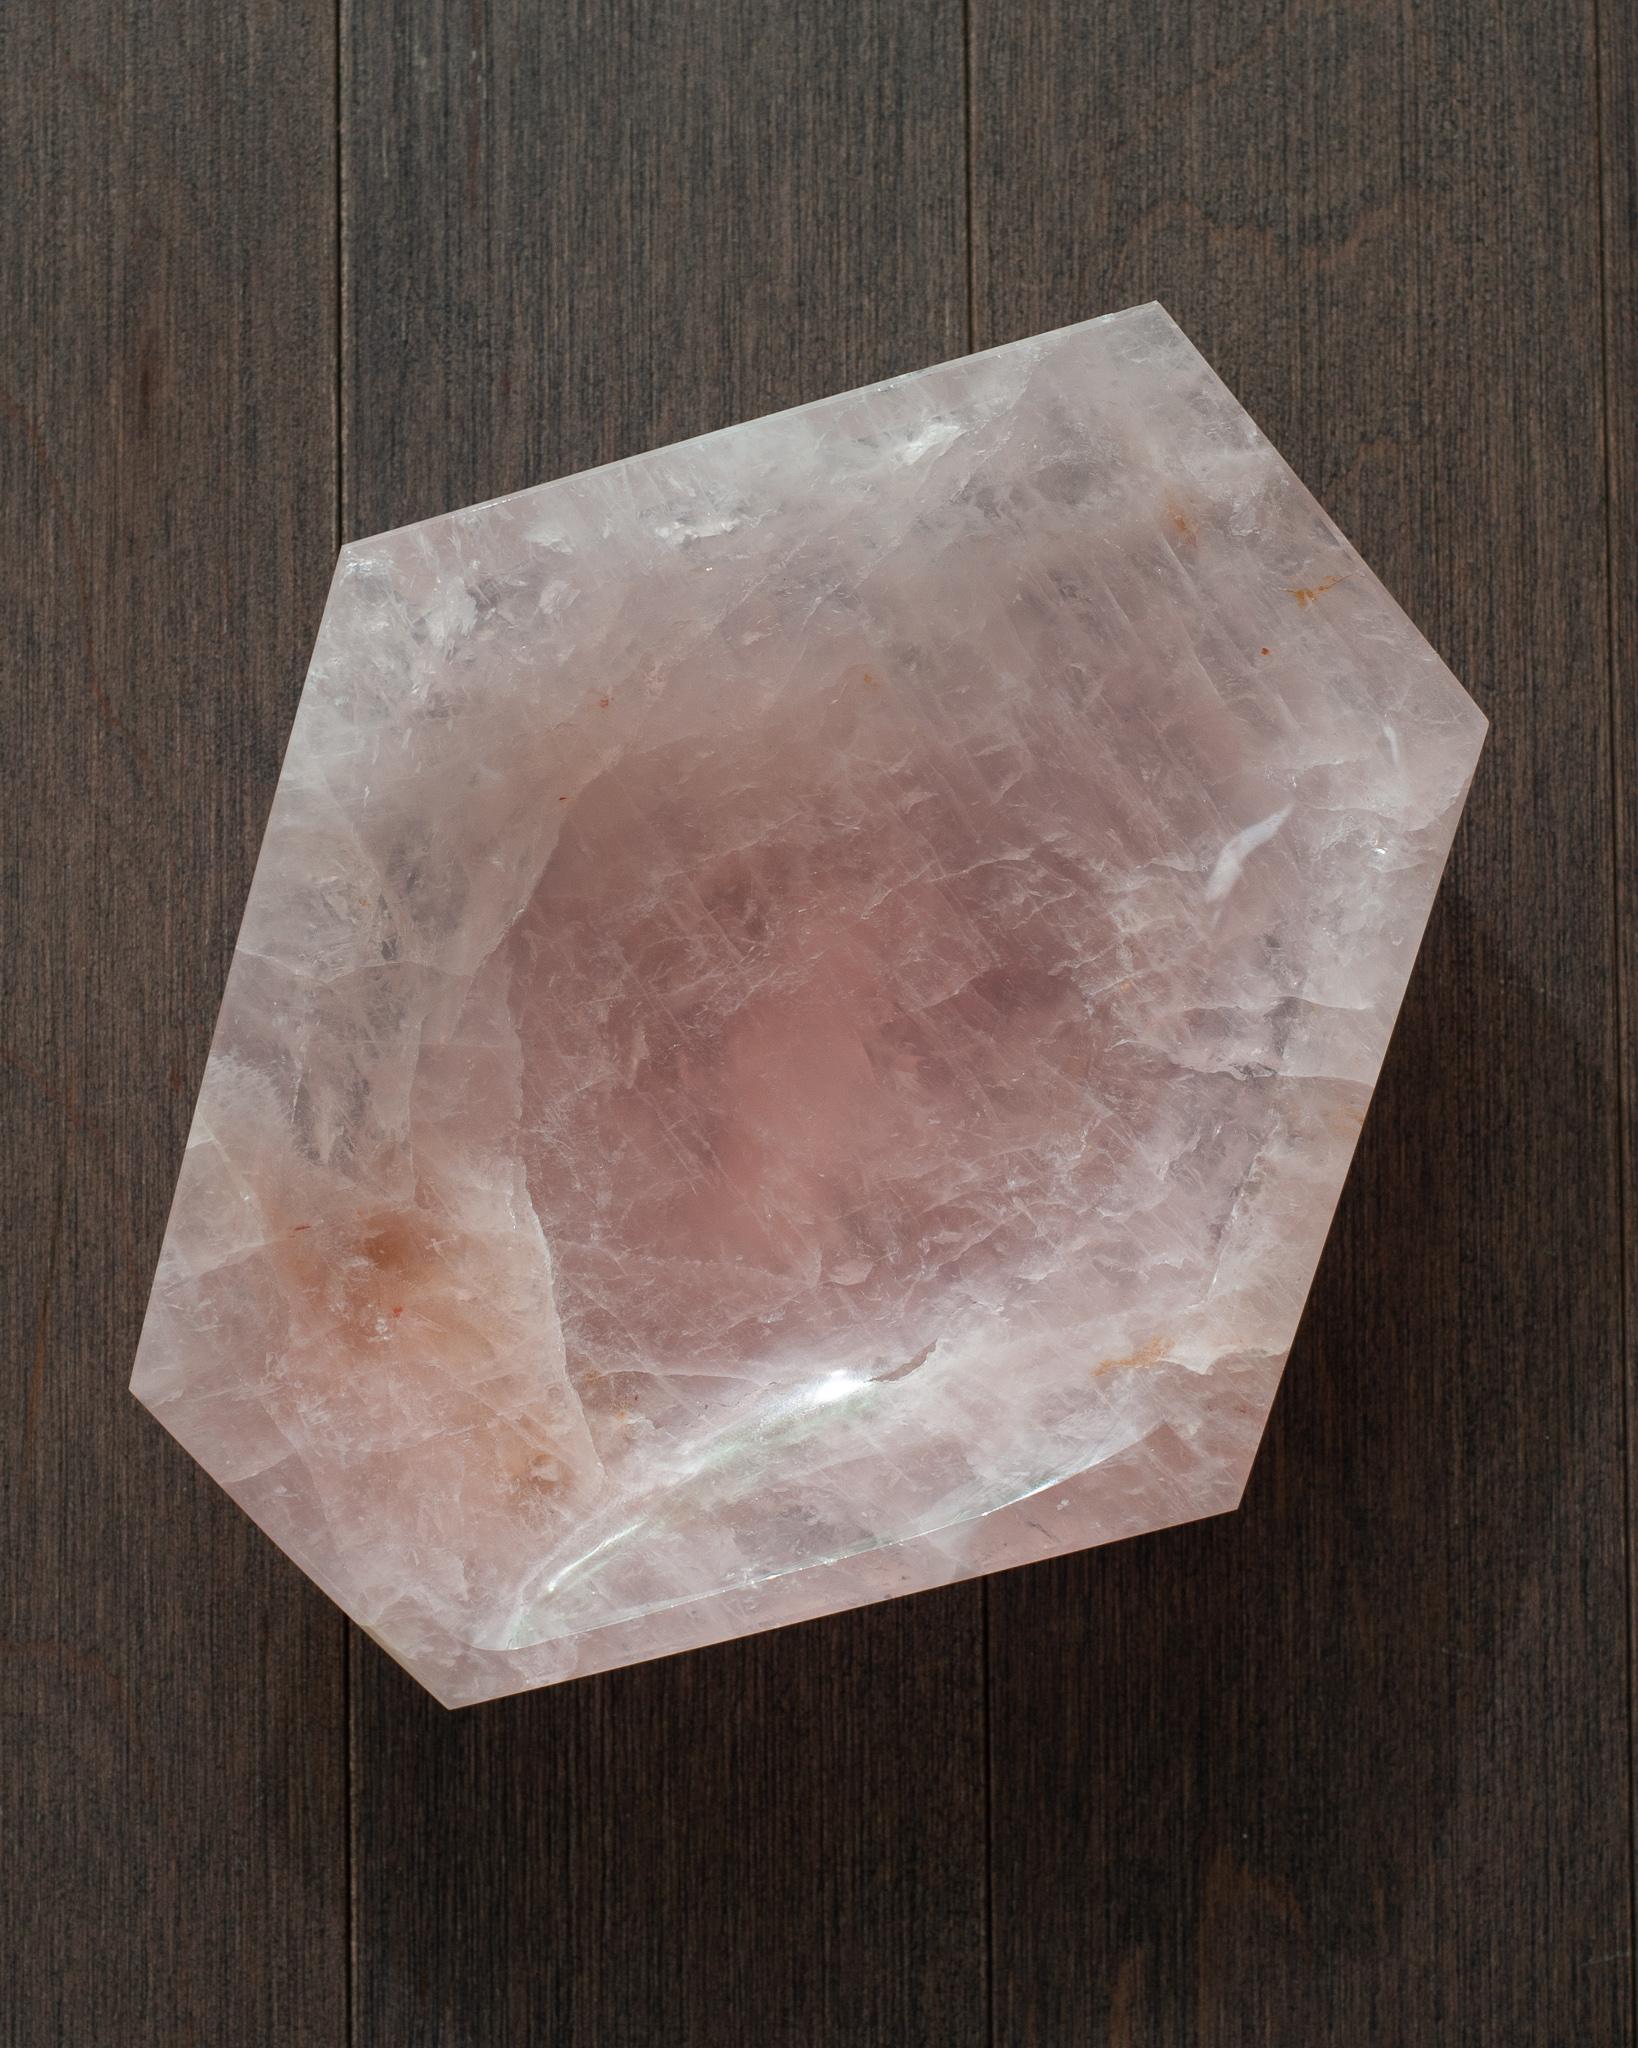 Un superbe bol contemporain en quartz rose vibrant avec une forme angulaire facettée. Invitez l'énergie curative du quartz rose dans votre intérieur avec un bol beau et fonctionnel. Cette pièce est taillée comme une pierre précieuse et présente une